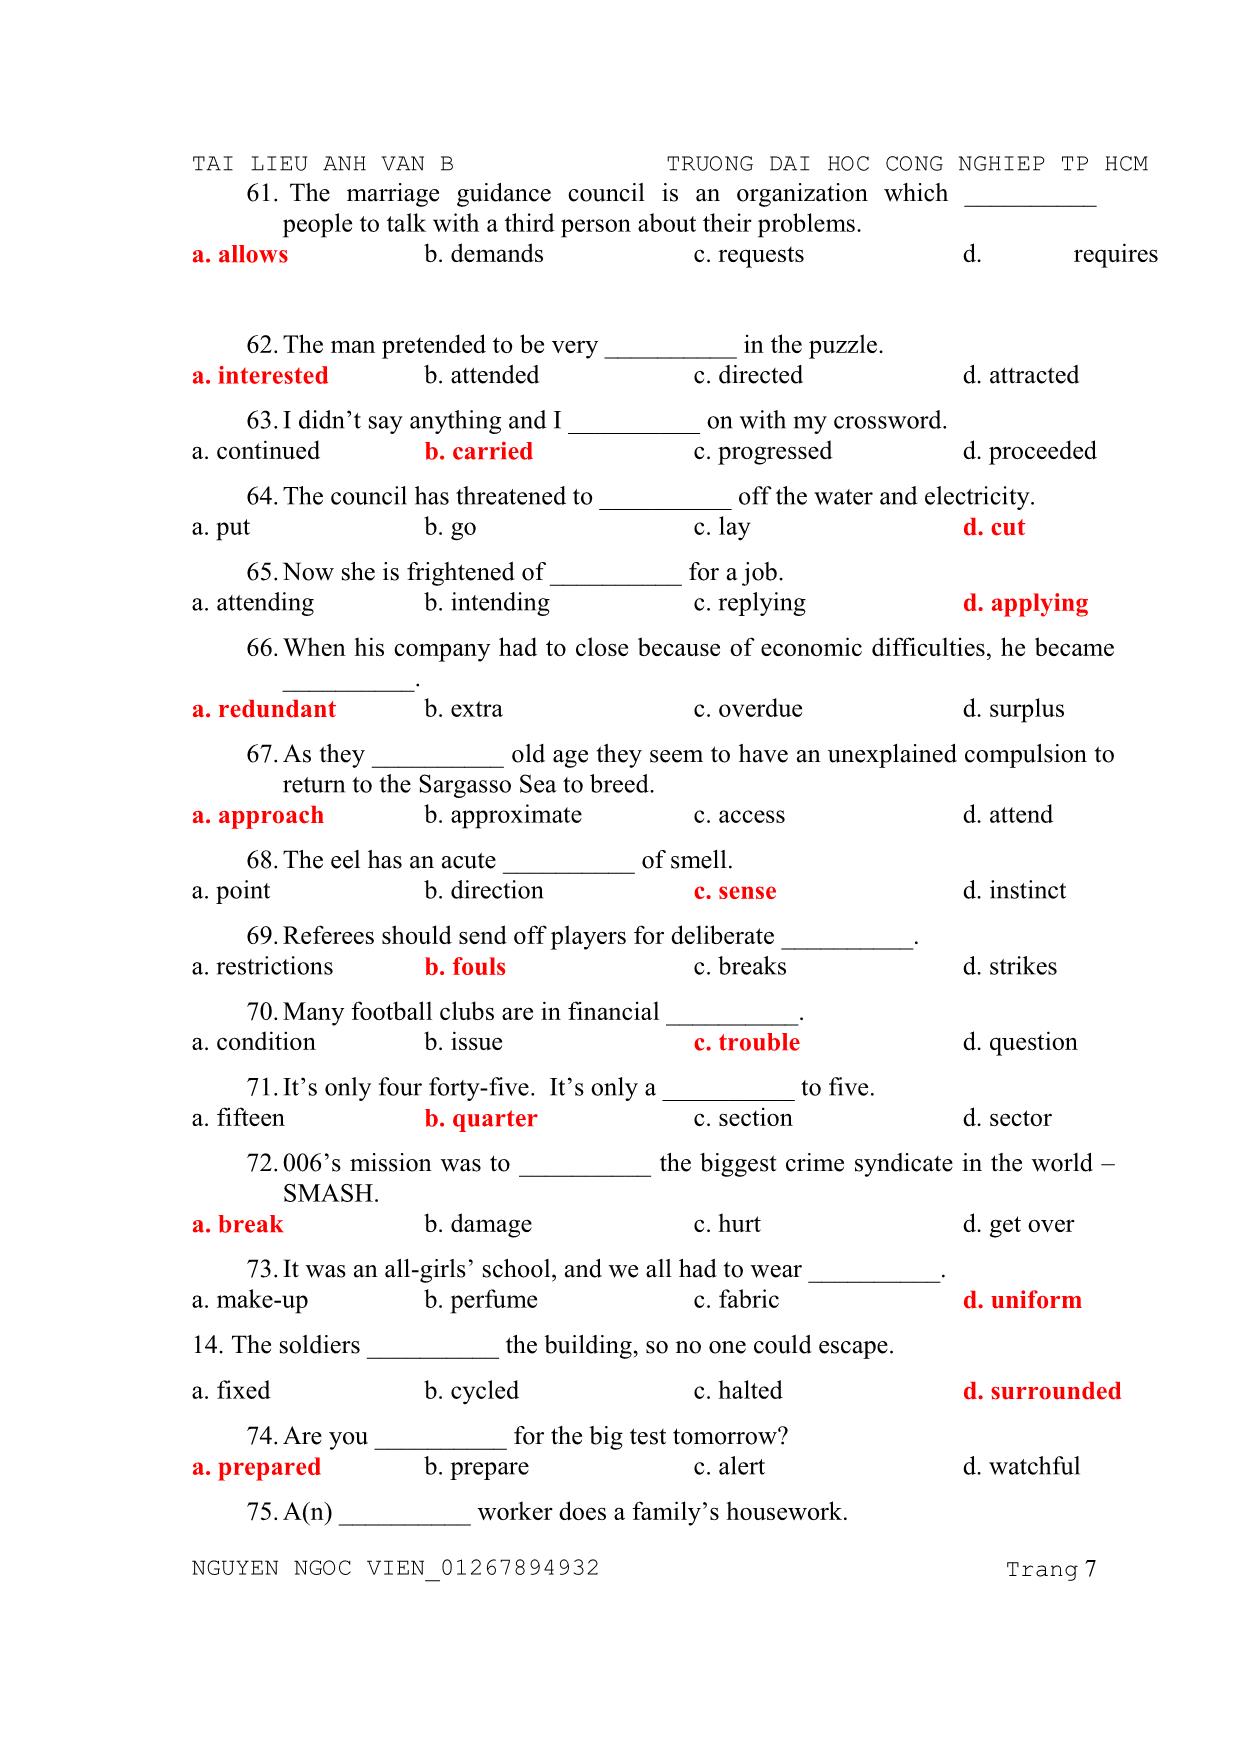 Tài liệu môn Anh văn B trang 7